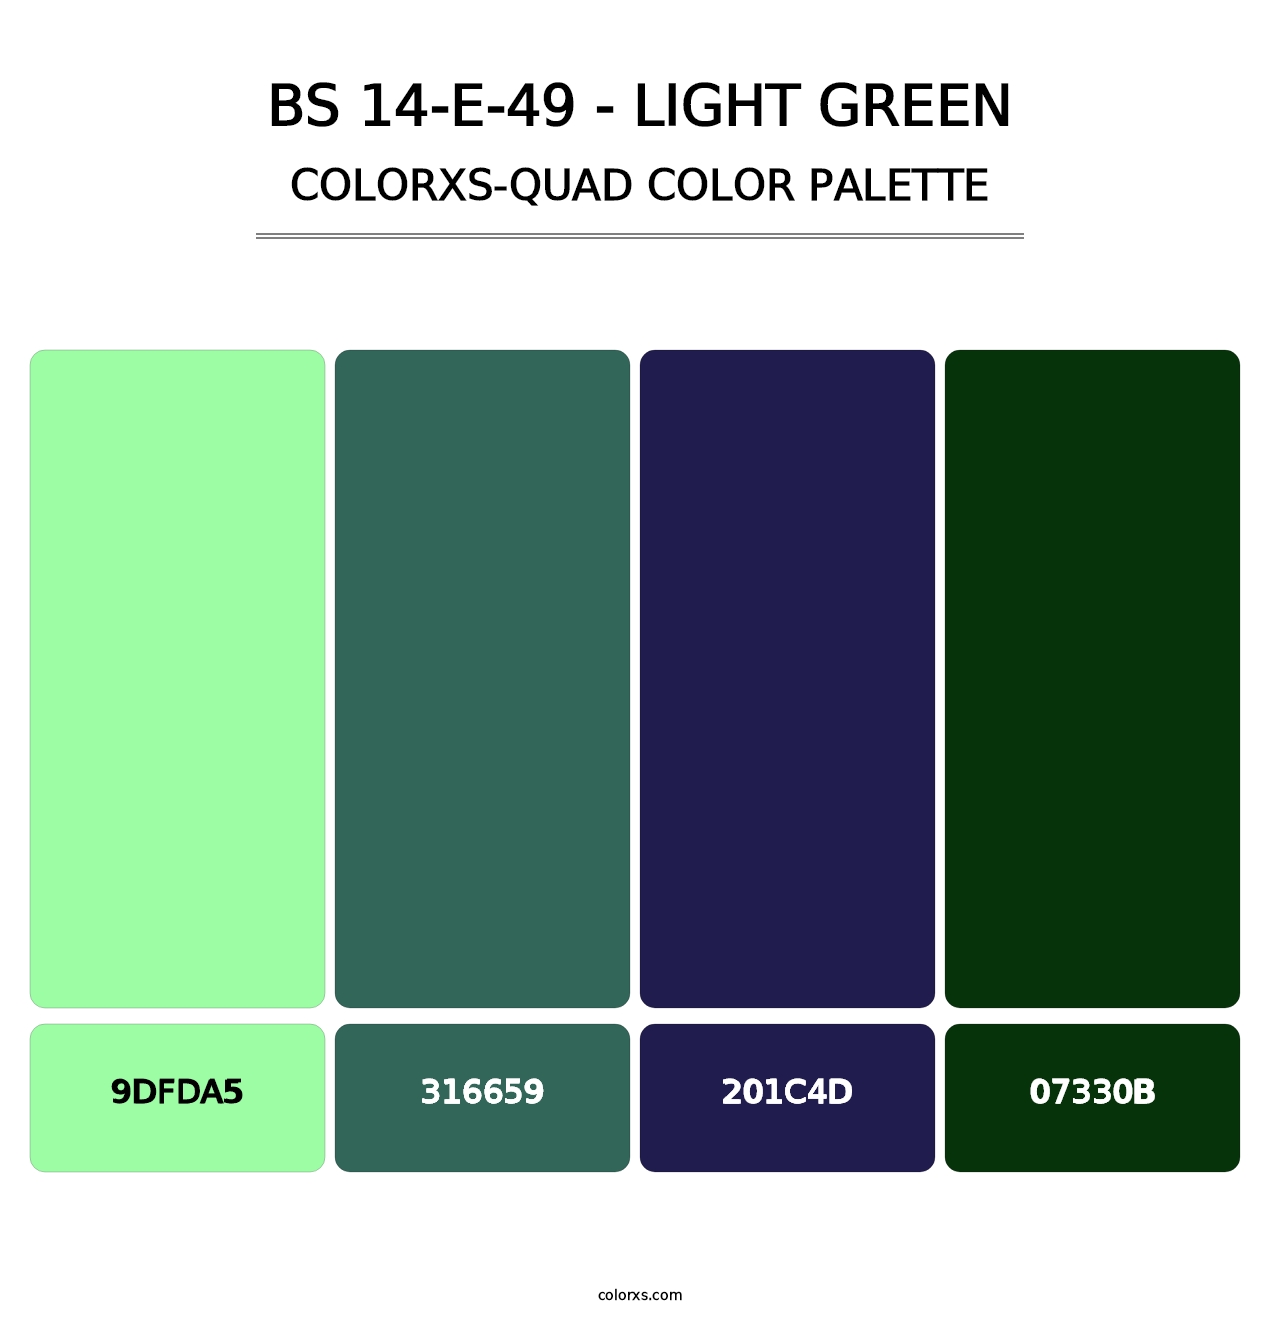 BS 14-E-49 - Light Green - Colorxs Quad Palette